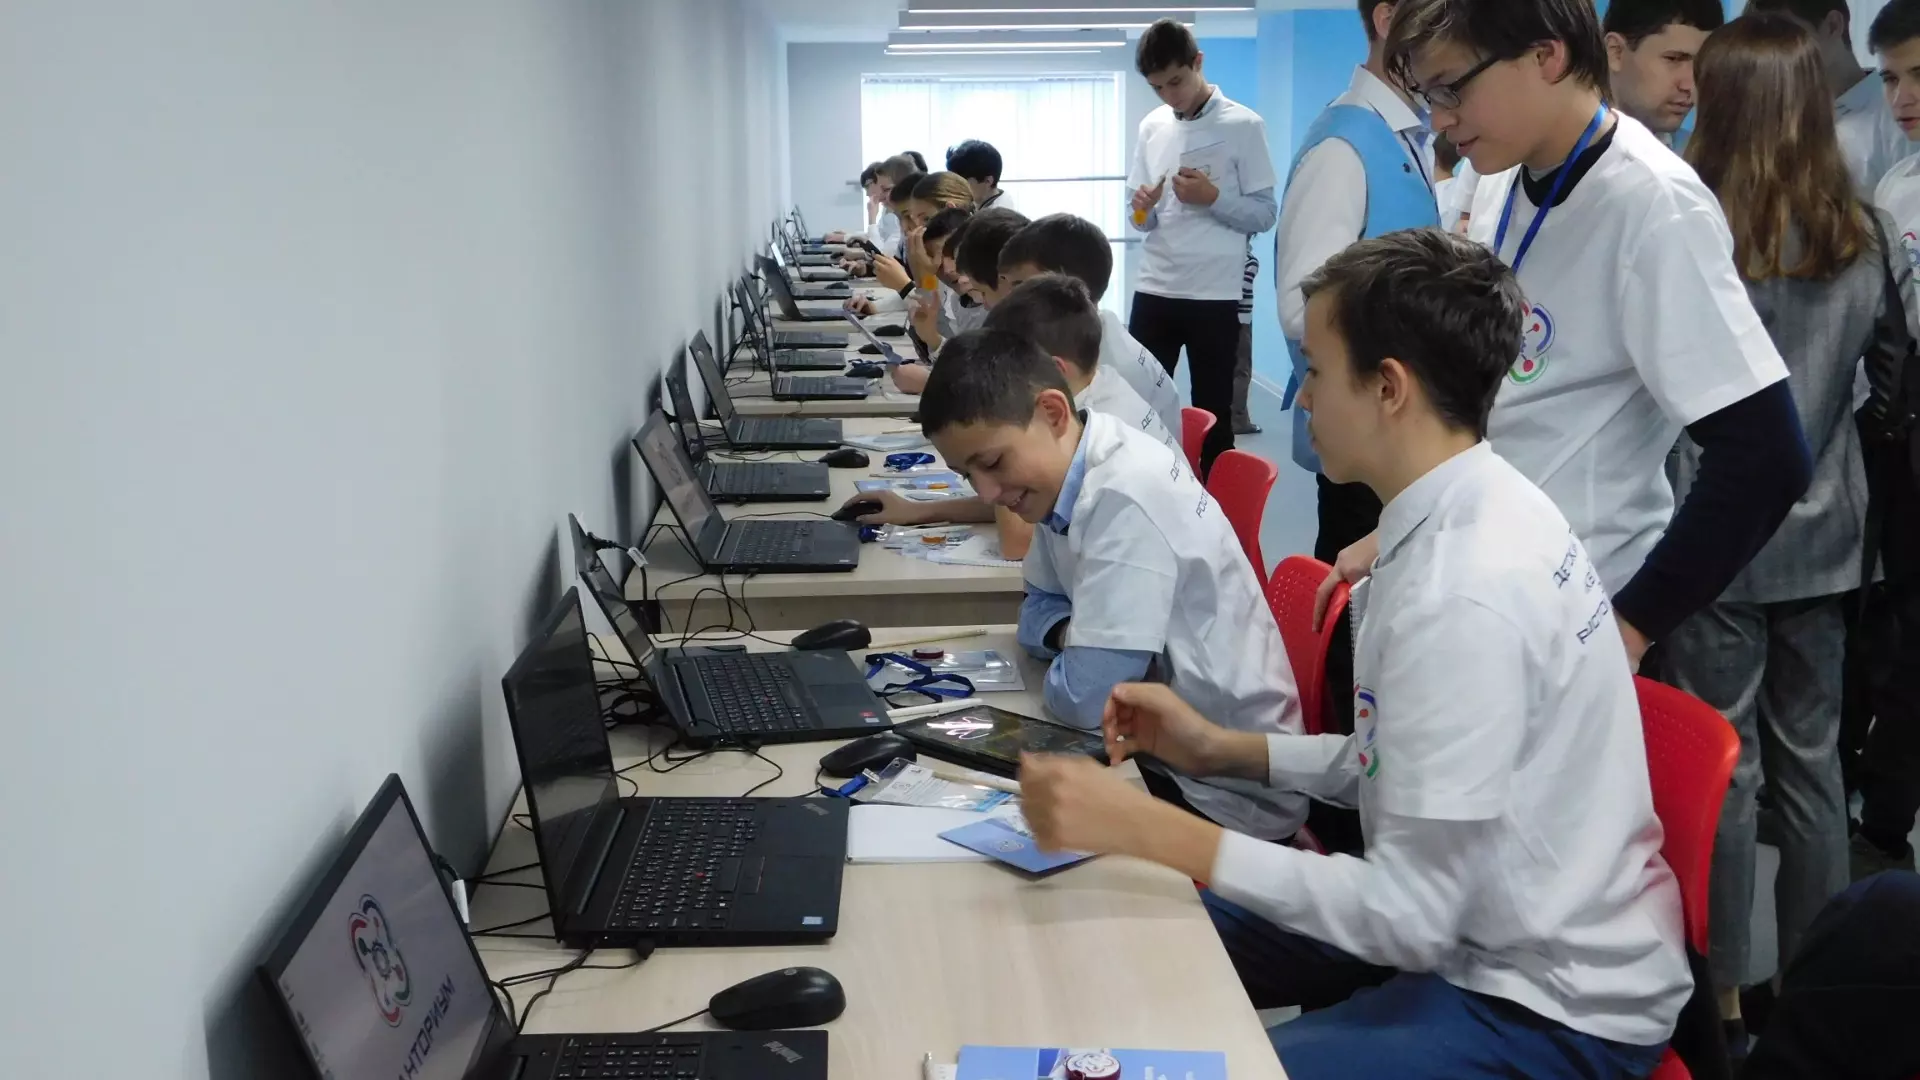 Ростовские школьники решили массово учиться на IT-специалистов